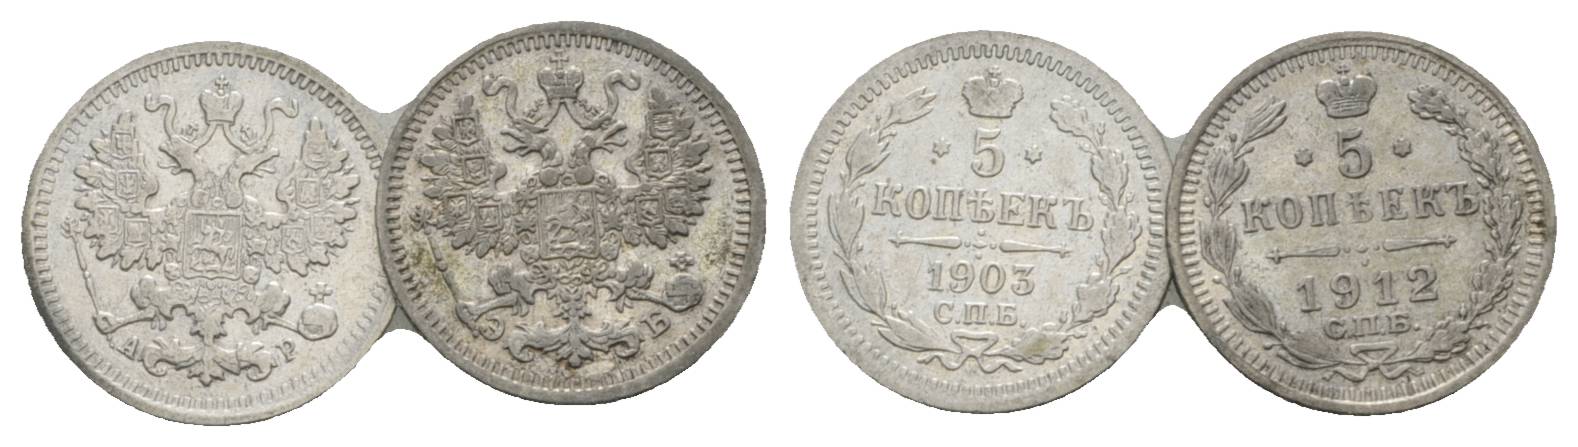  Russland, 2 Kleinmünzen (1903/1912)   